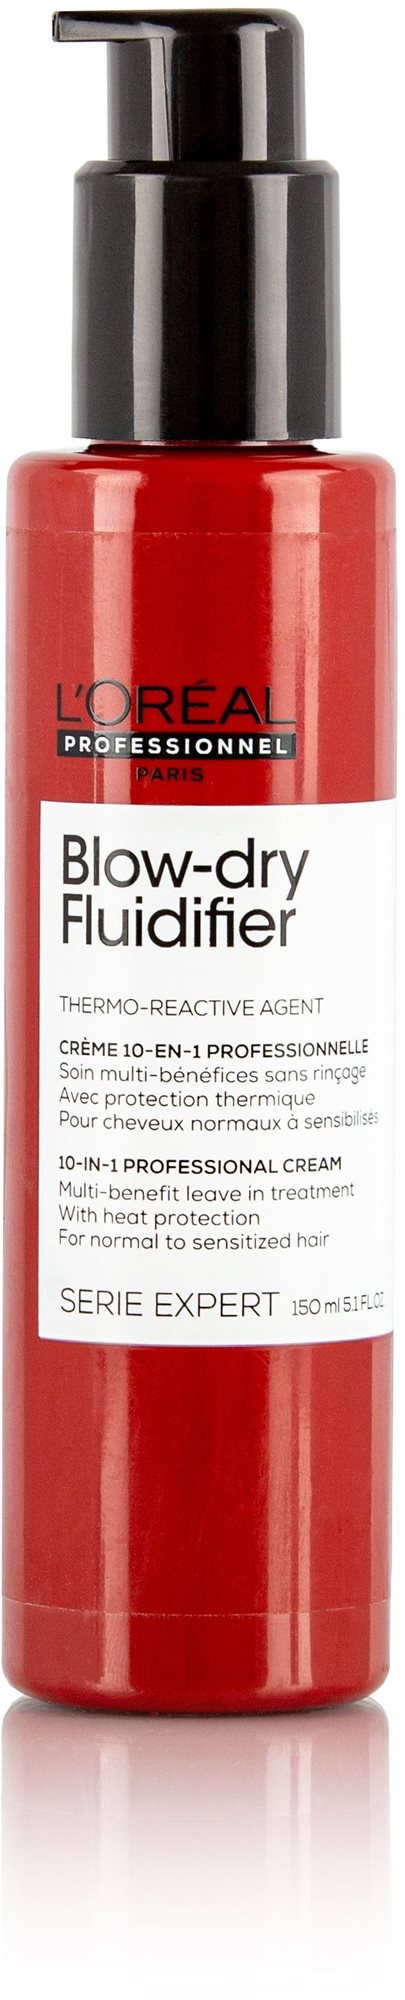 Hajformázó krém L'ORÉAL PROFESSIONNEL Serie Expert New Blow-dry Fluidifier 150 ml